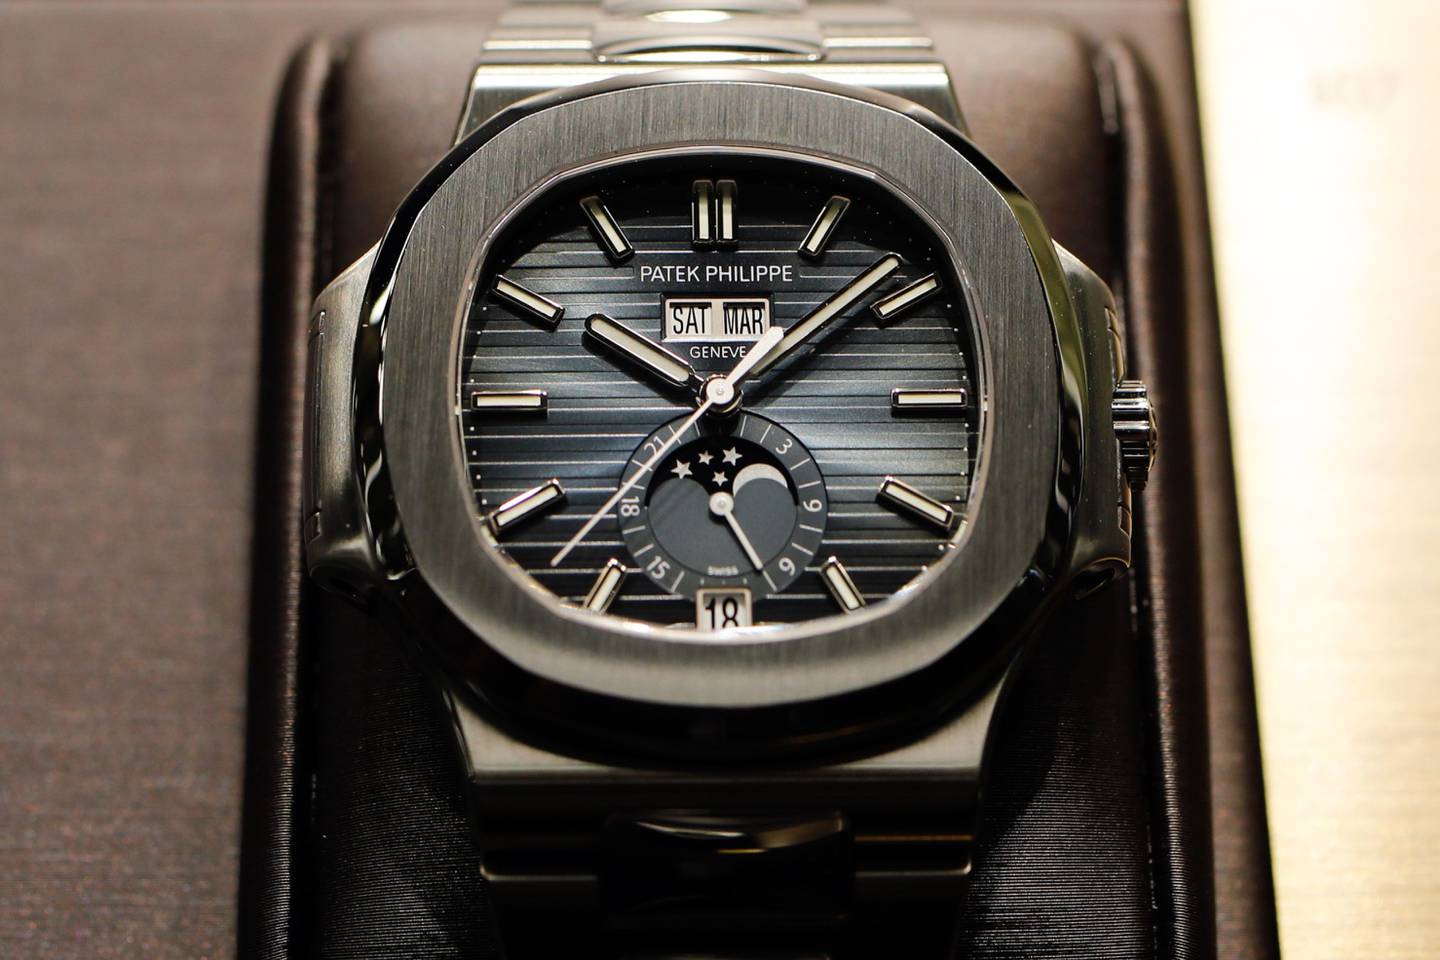 Un reloj de pulsera de lujo 5726/1 Nautilus Annual Calendar, producido por Patek Philippe SA, se exhibe durante el segundo día de la feria de relojes y joyas de lujo Baselworld 2019 en Basilea, Suiza, el jueves 21 de marzo de 2019.